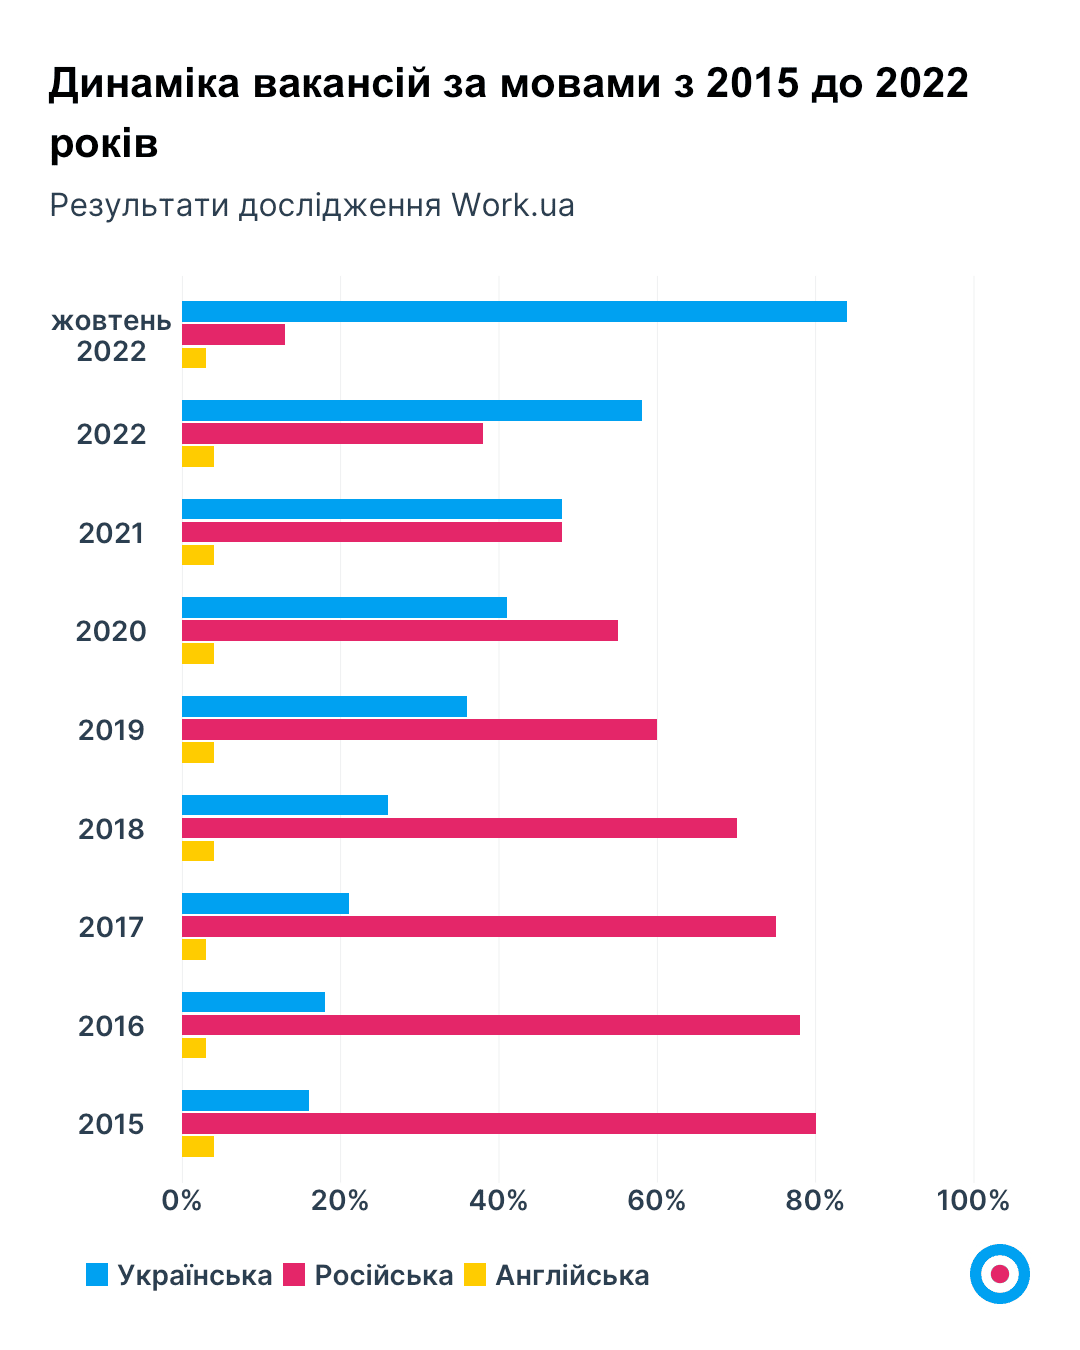 Графік 1. Динаміка вакансій за мовами з 2015 до 2022 років